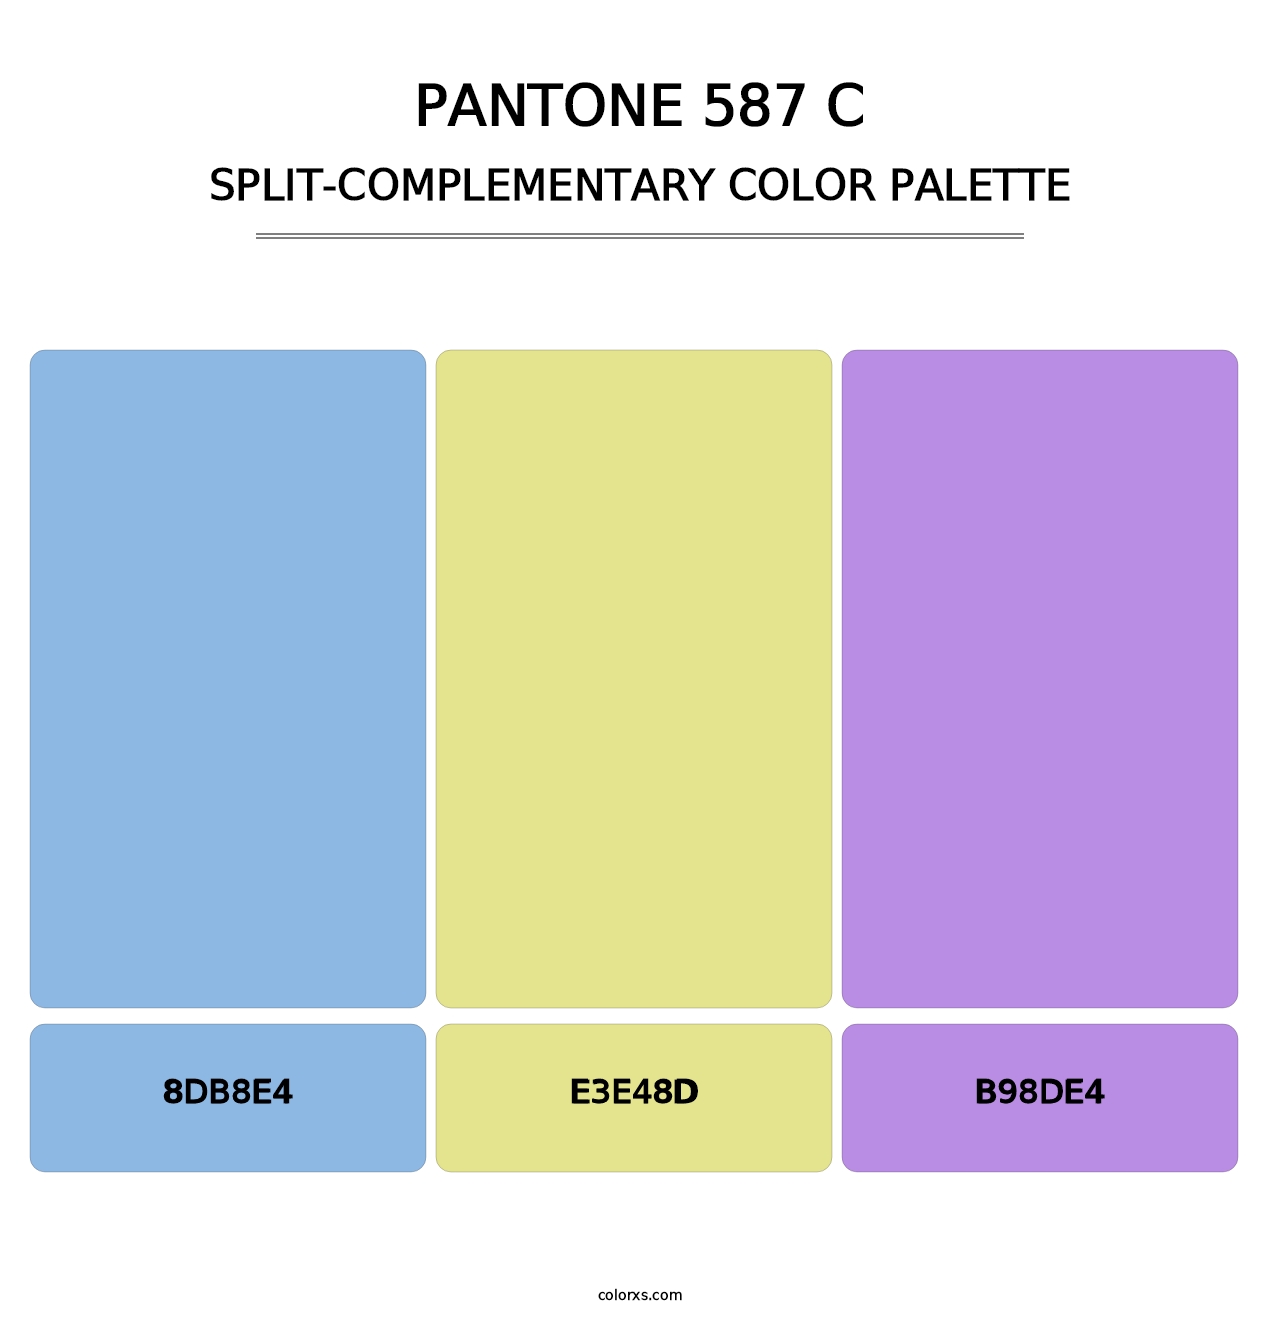 PANTONE 587 C - Split-Complementary Color Palette